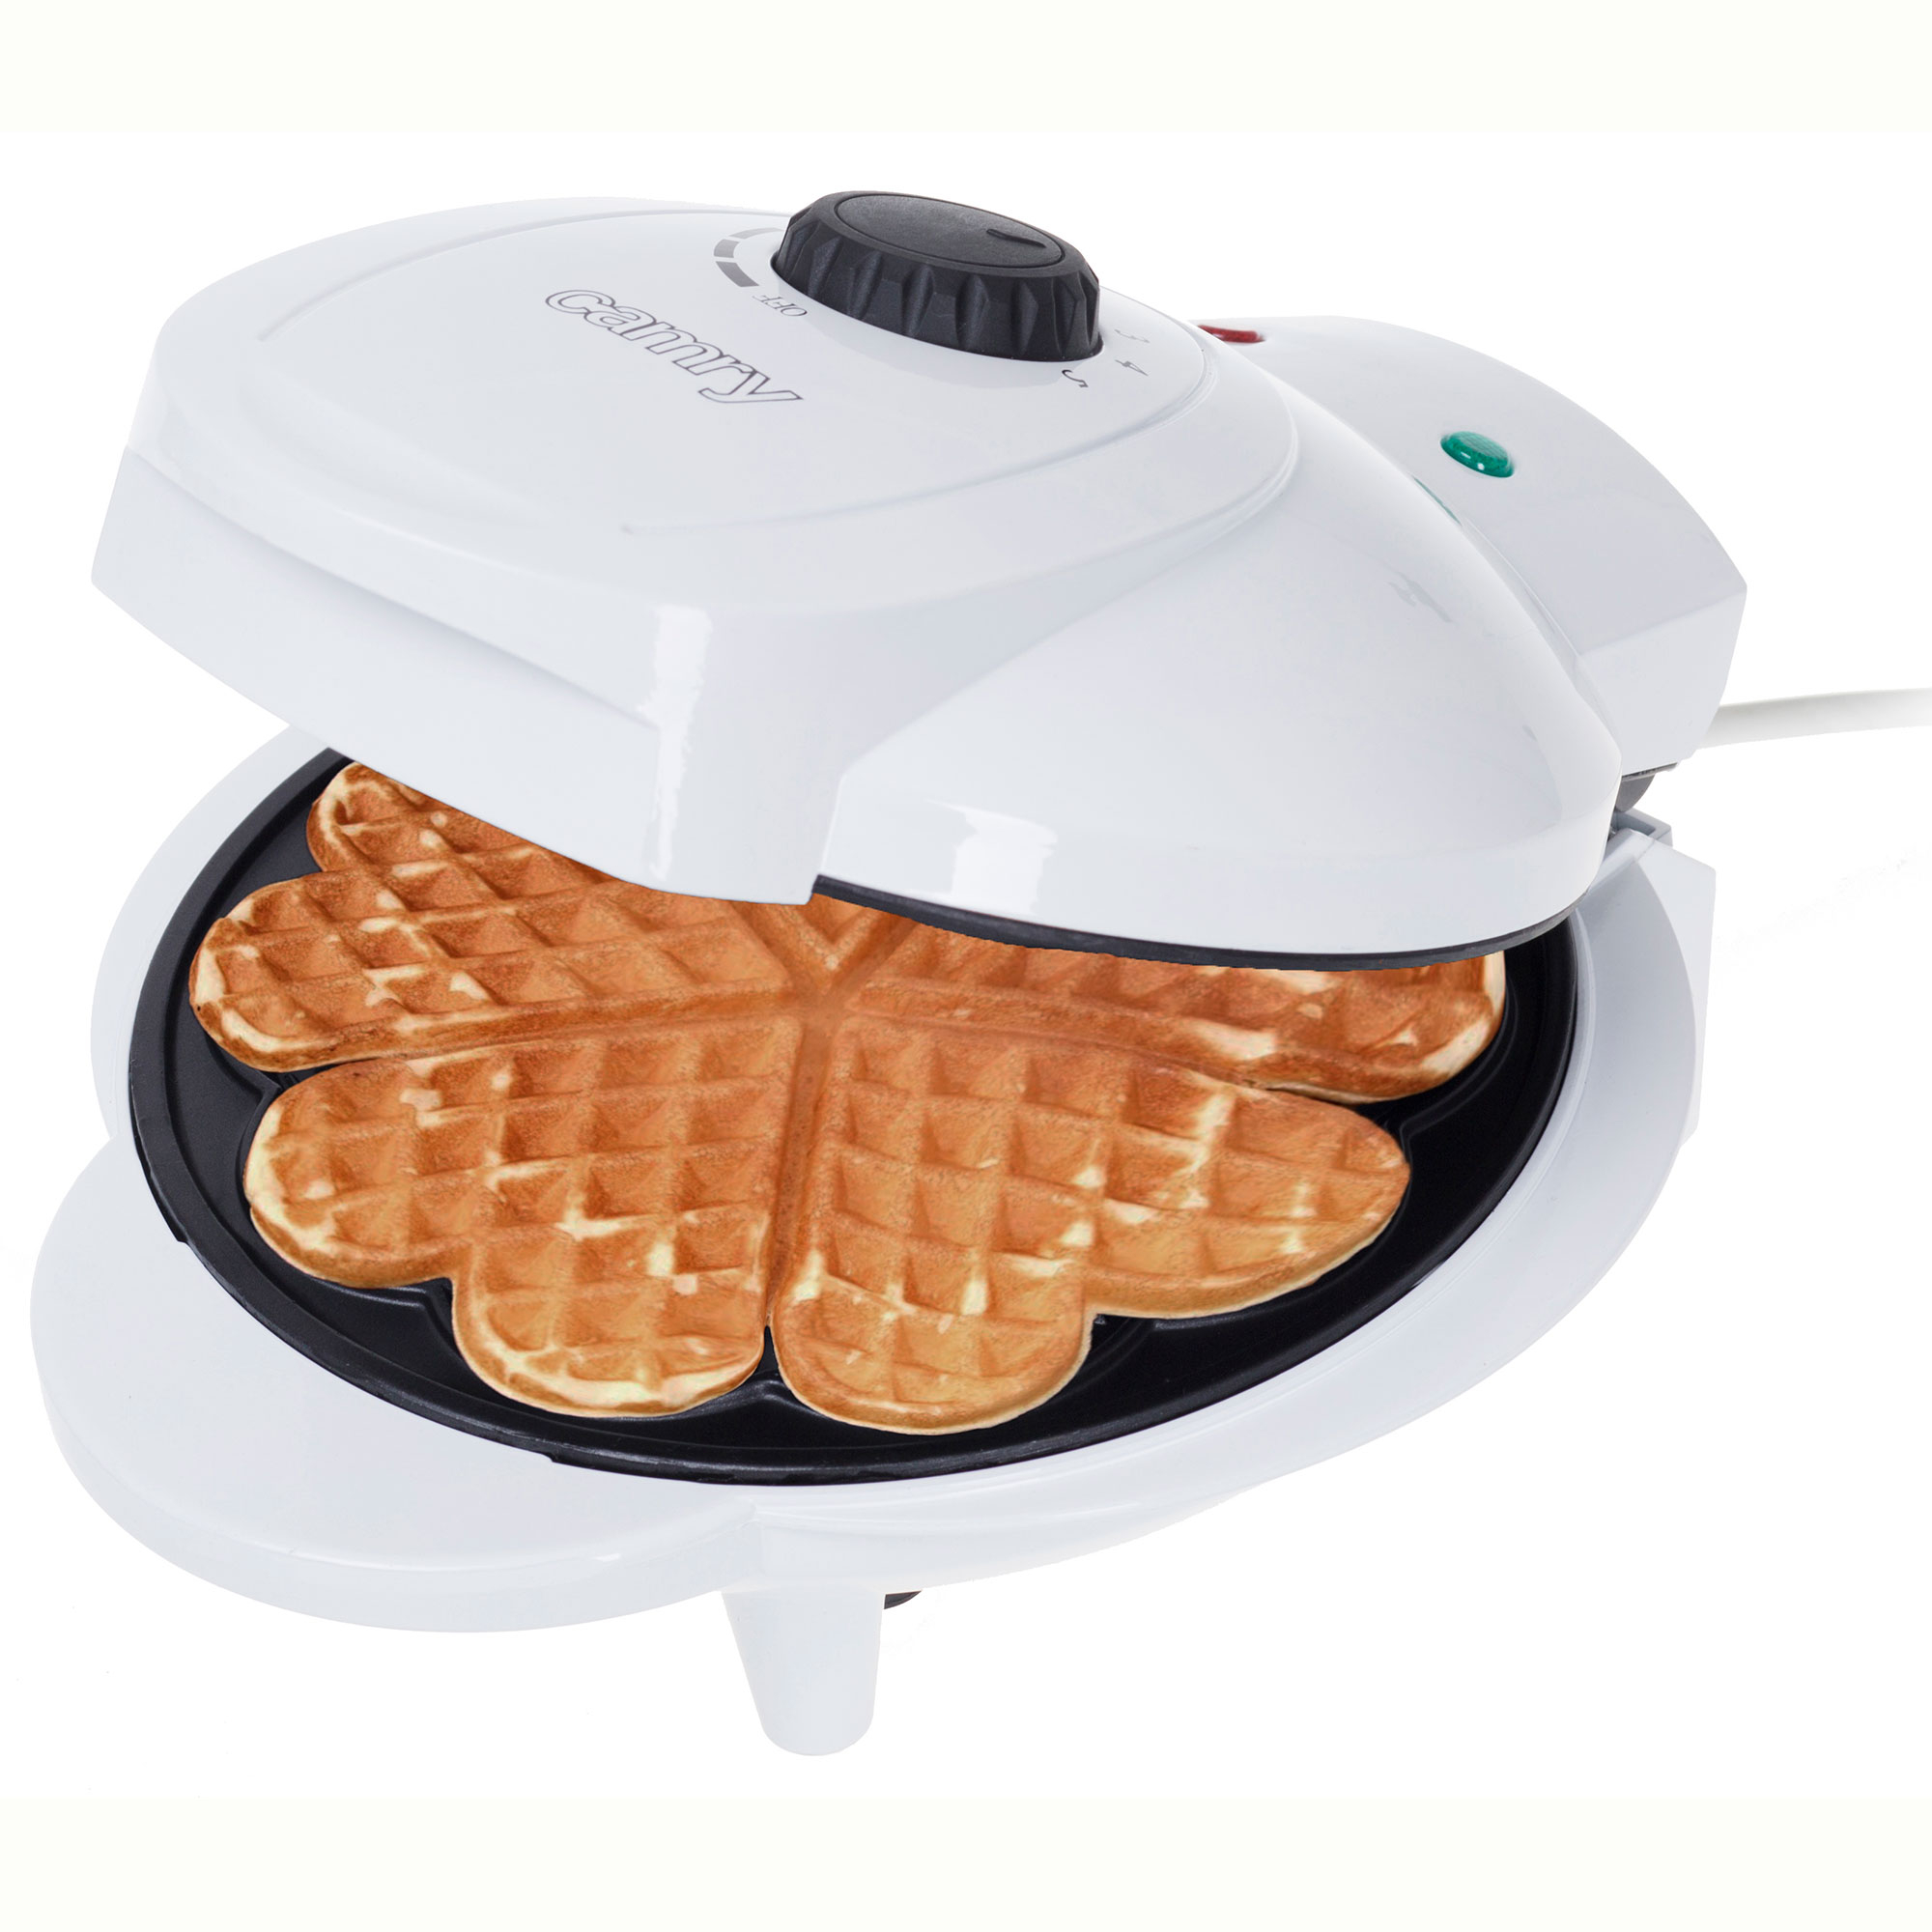 Adler Camry Cr 3022 gofrera 5 forma placas antiadherentes regulador de temperatura waffle maker 1000w 1000